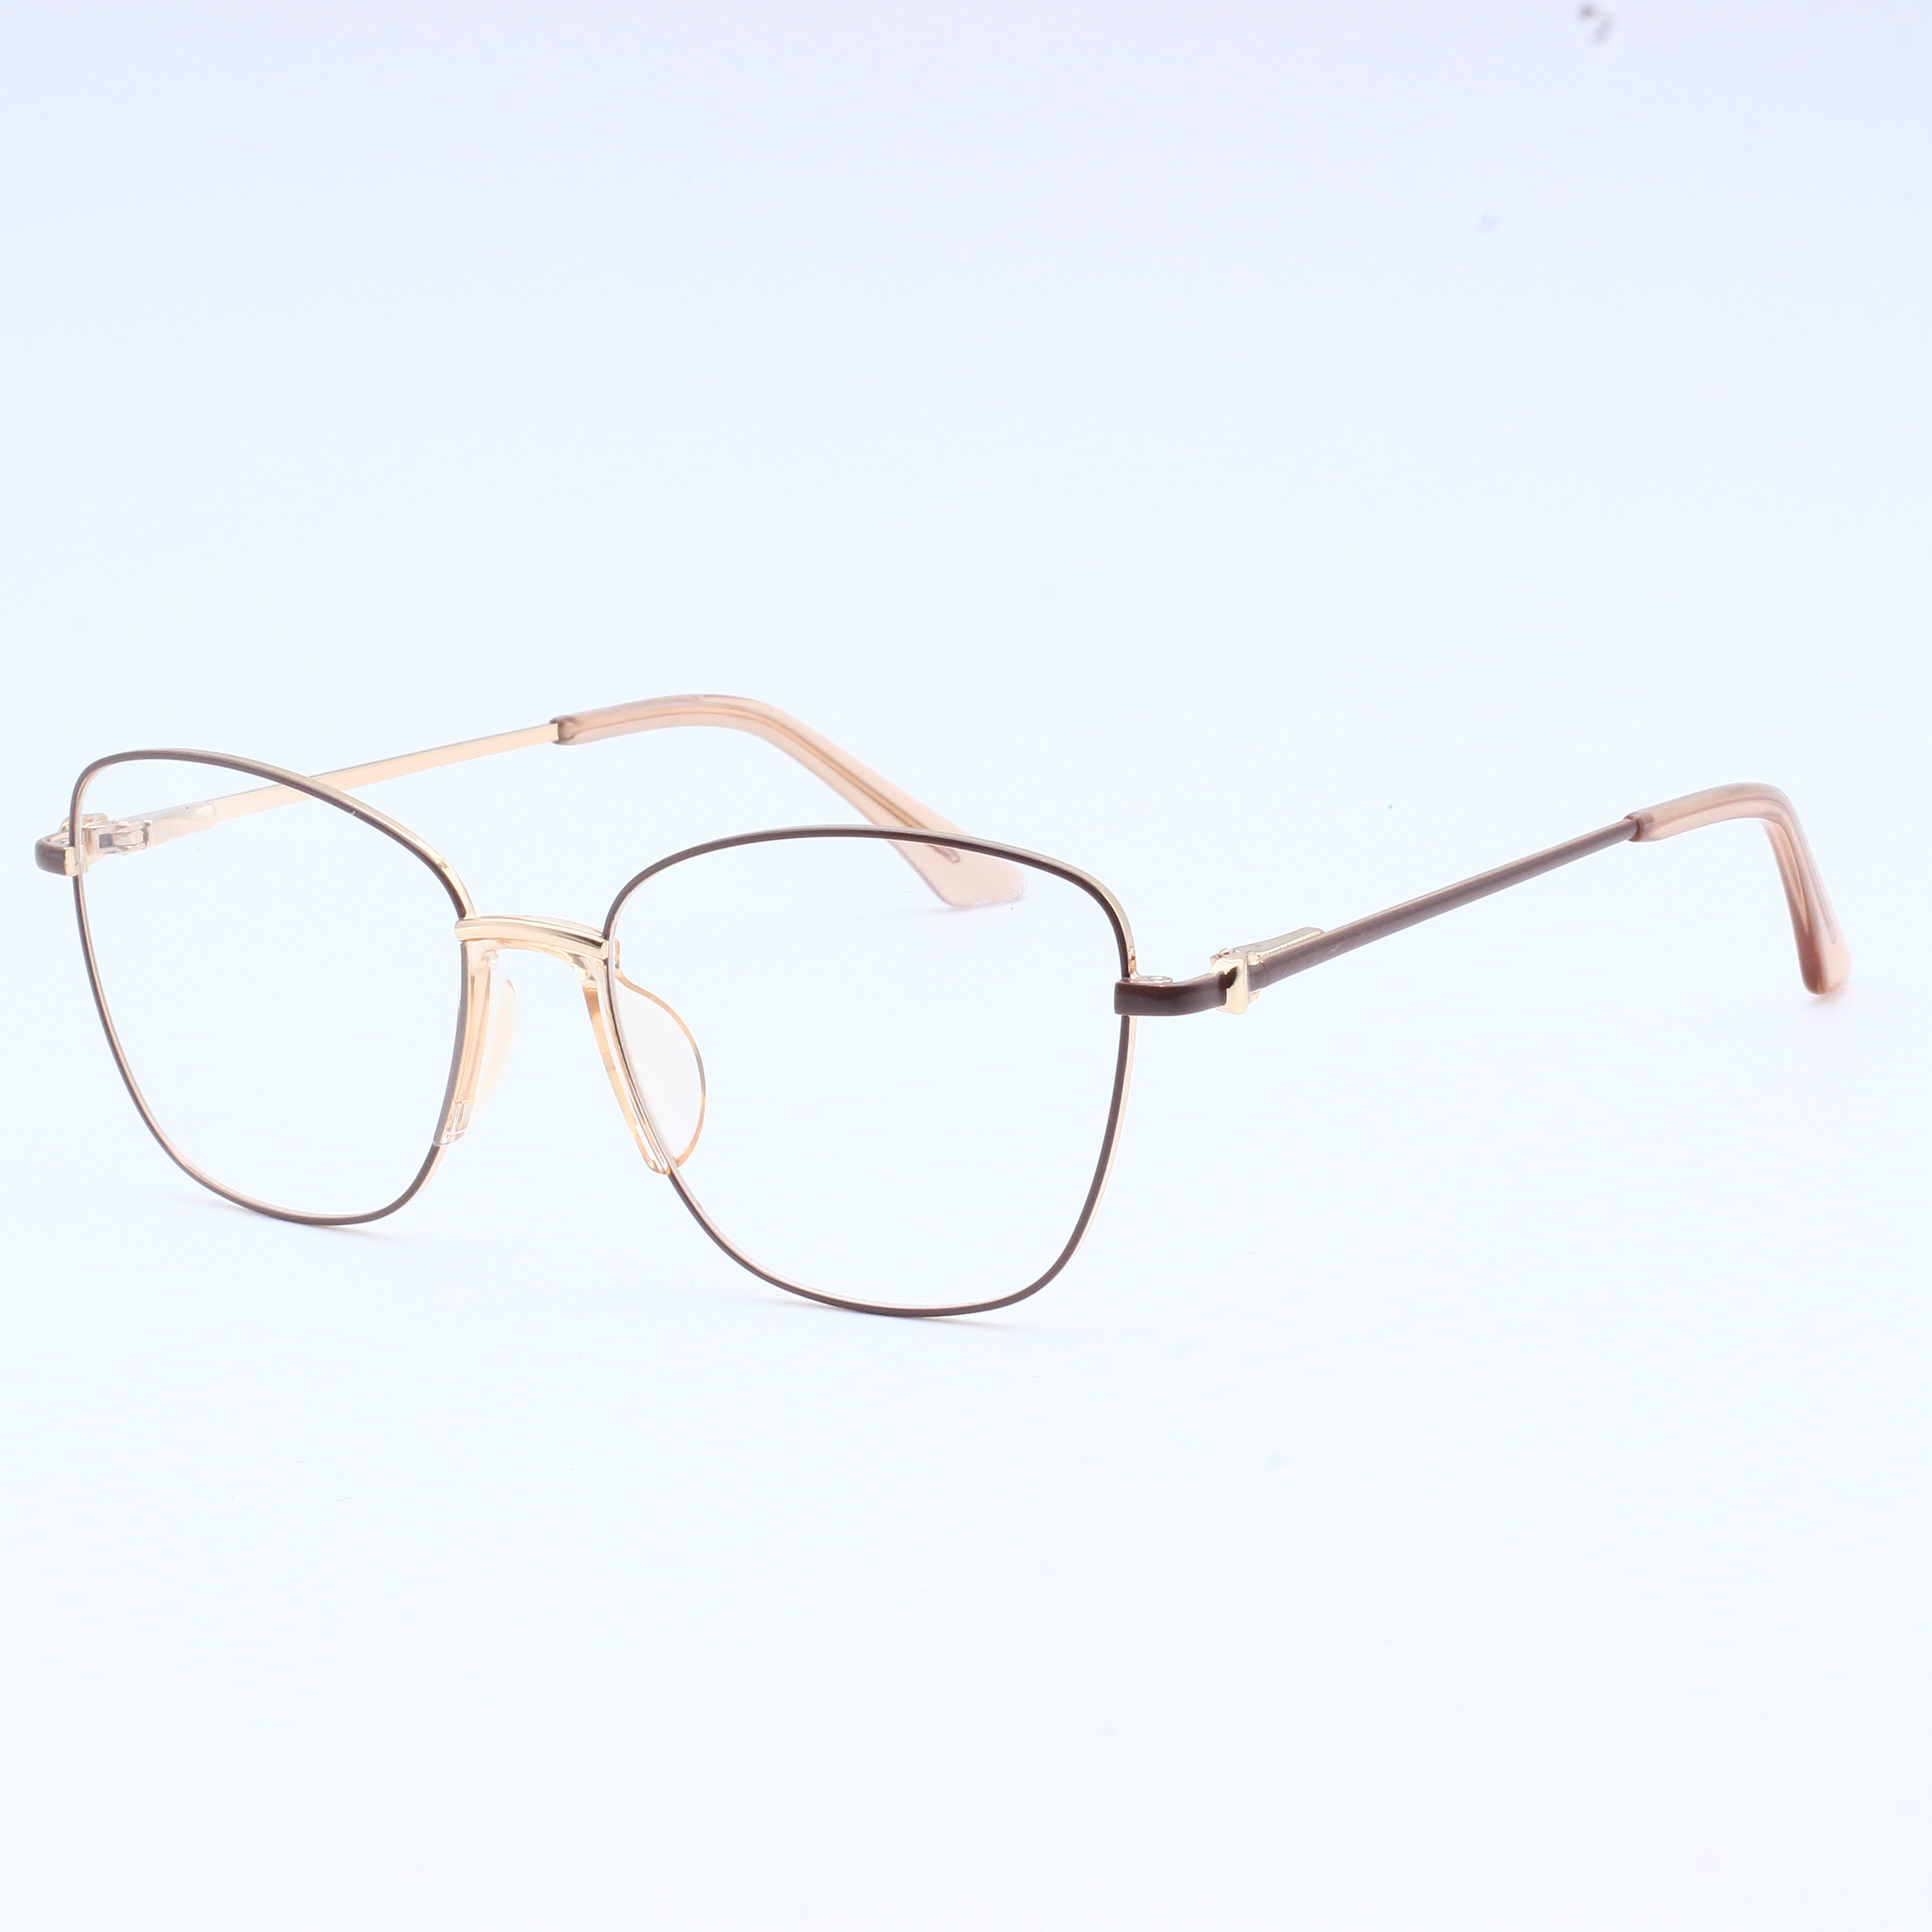 Anti Blue Rays Glasses Spring Leg Eyeglasses Optical Frames (7)